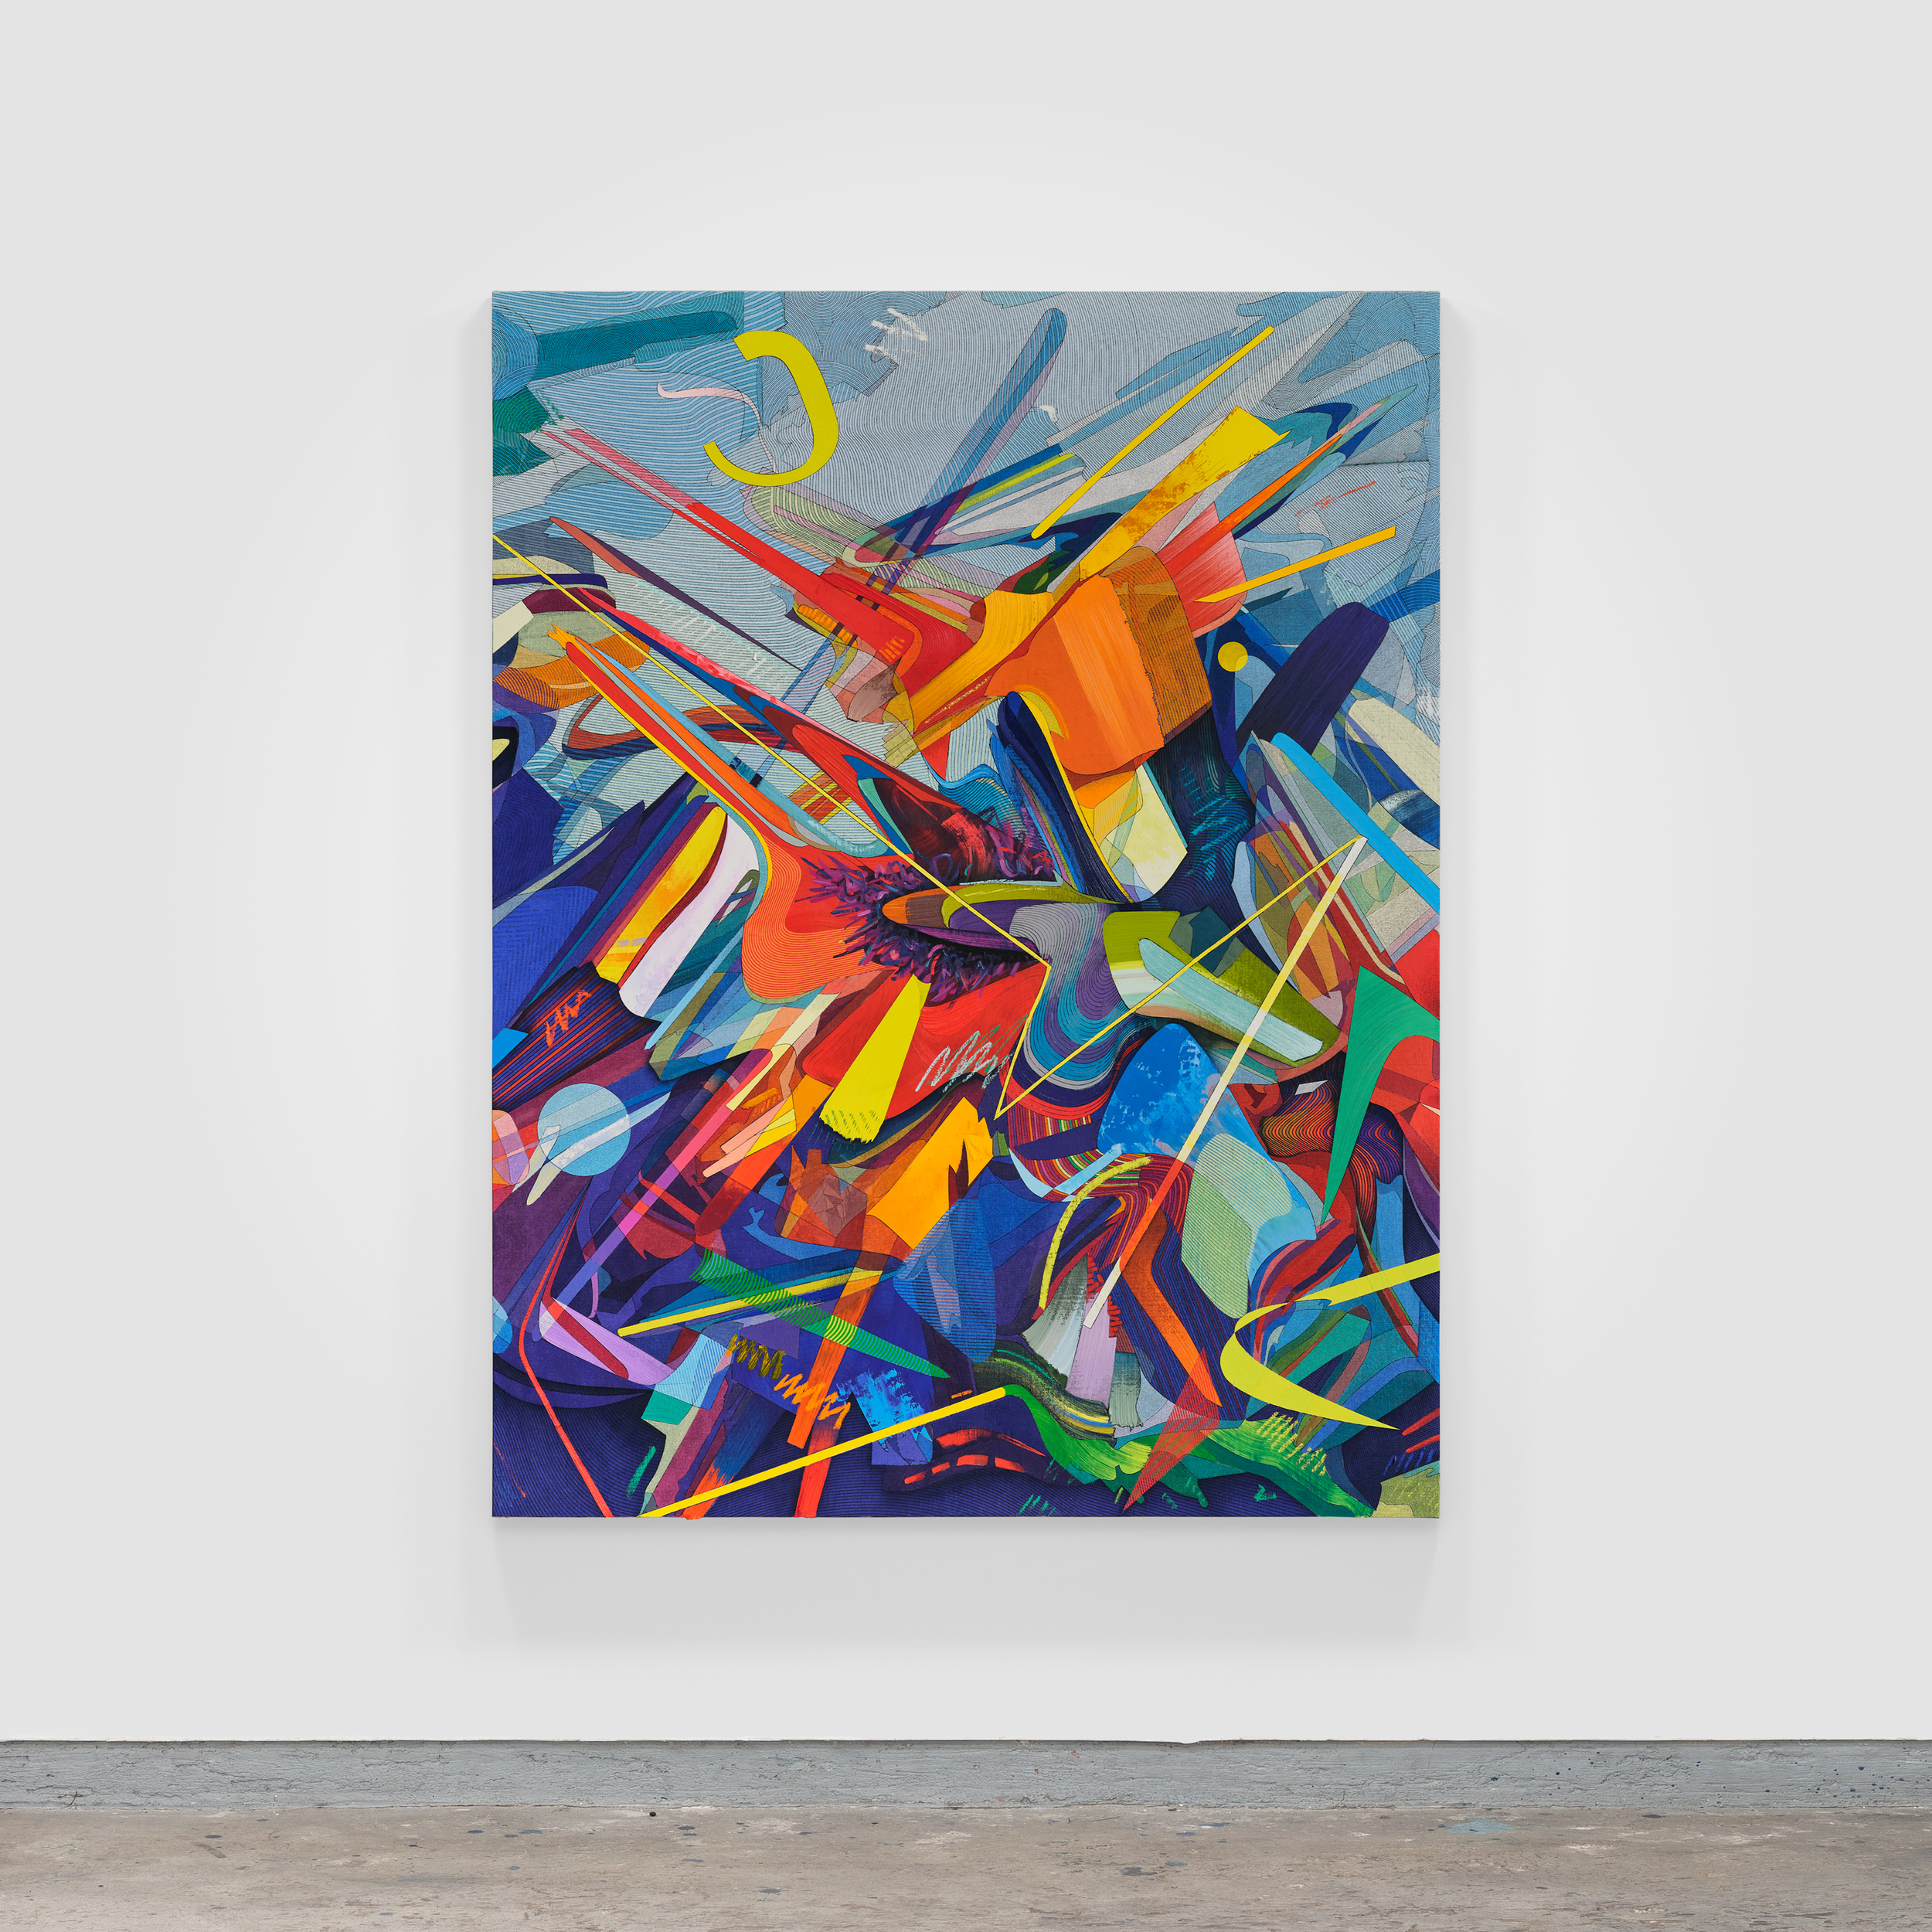 El-Color-detras-del-Velo,-Atlantico,-Oil-&-Acrylic-on-Linen-mounted-on-Panel,-220-x-170-cm-2022-by-Omar-Rodriguez-Graham-(9).png